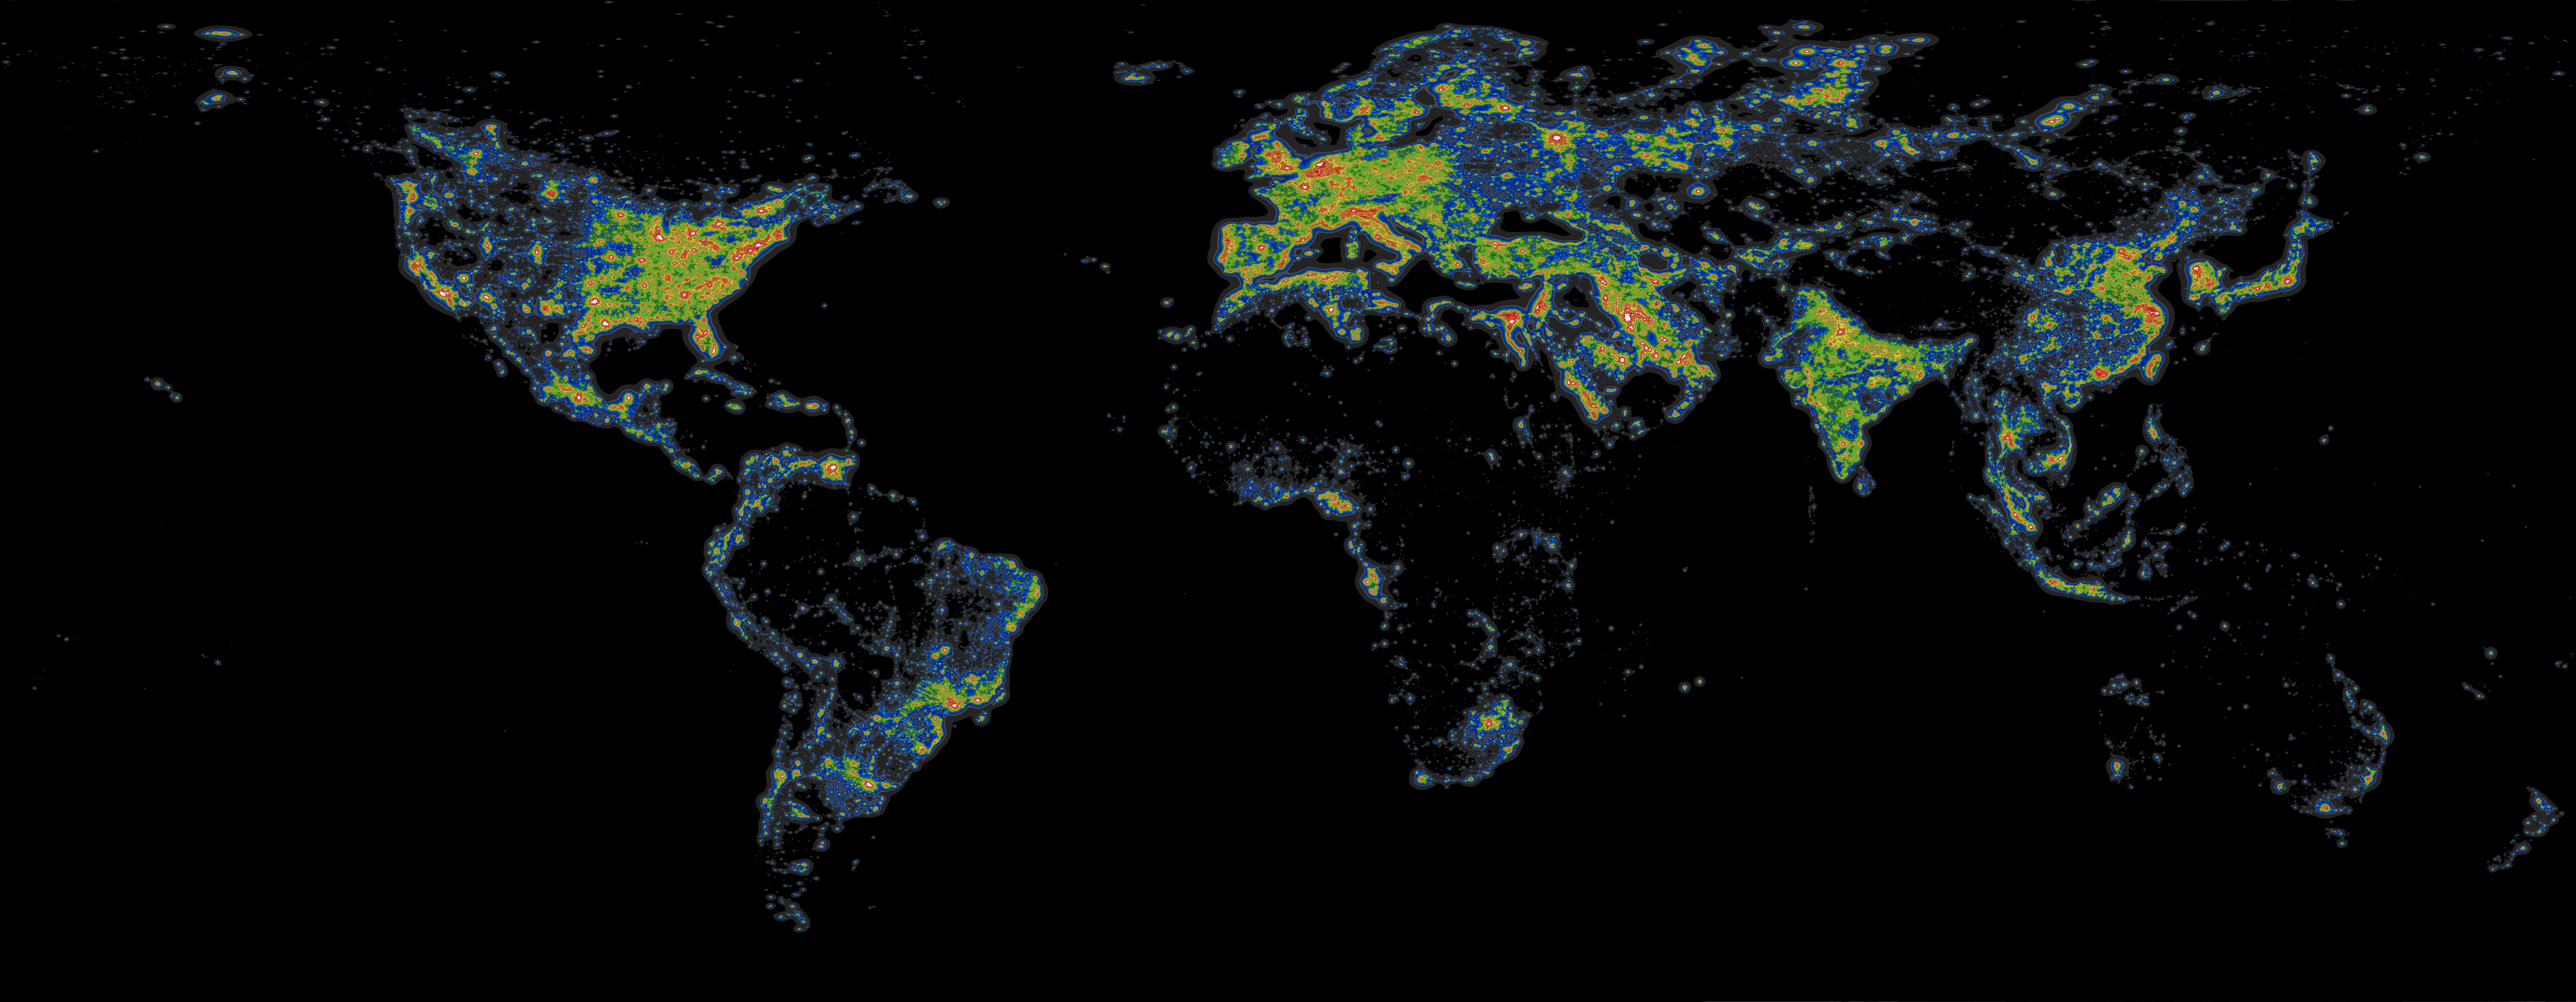 Light Pollution Atlas 2016